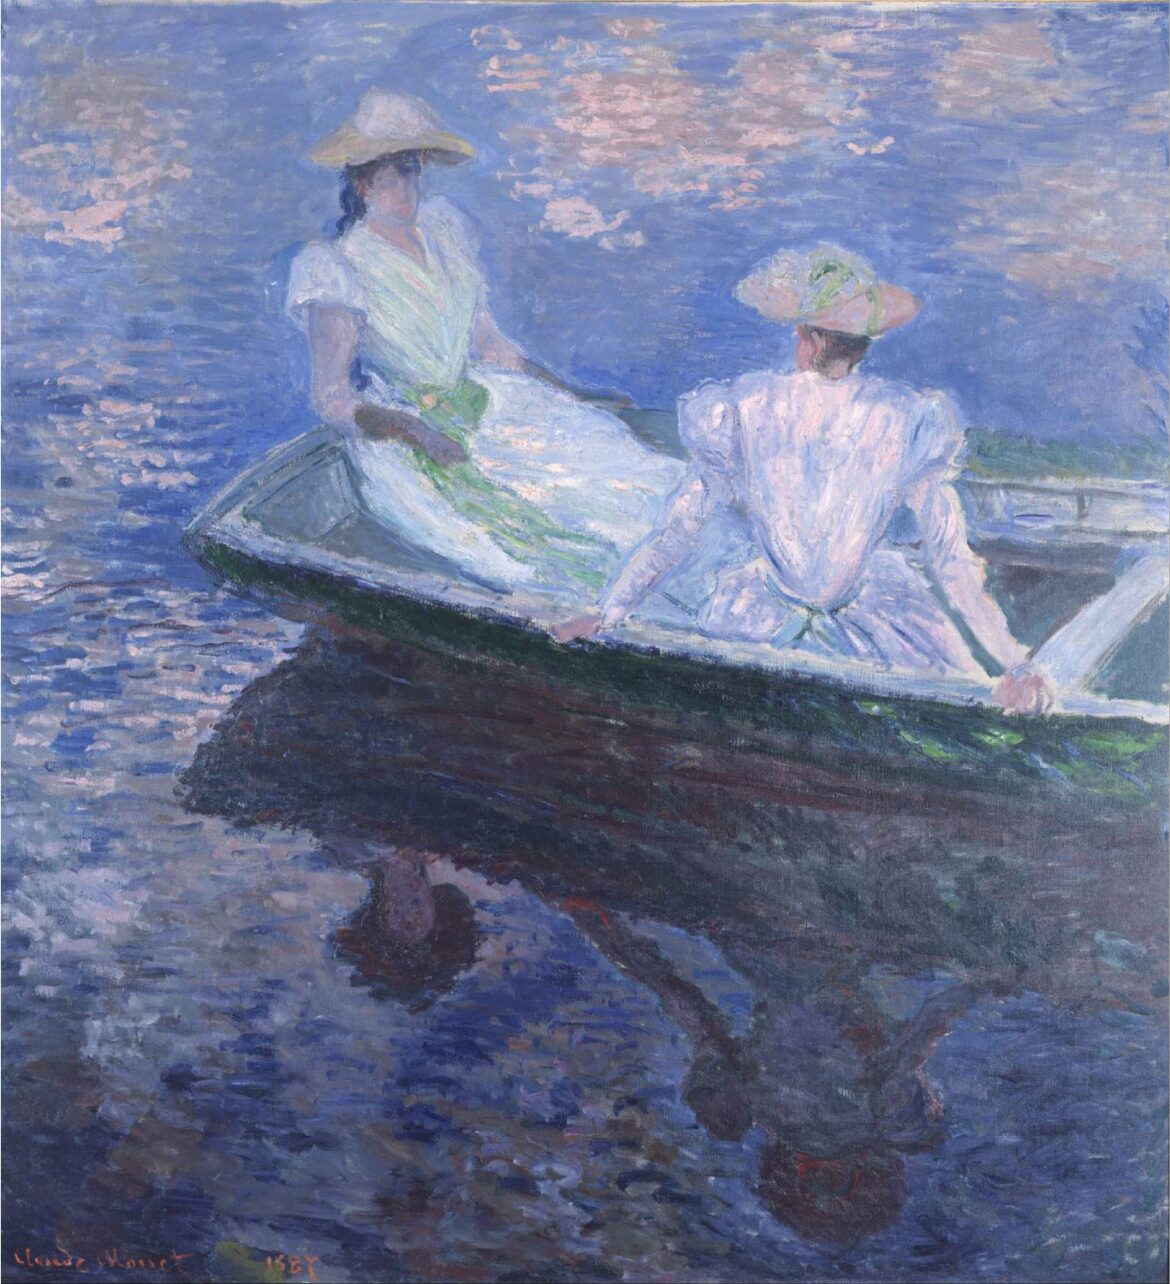 【無料壁紙】クロード・モネ「舟遊び (1887)」 / Claude Monet_On the Boat (1887)